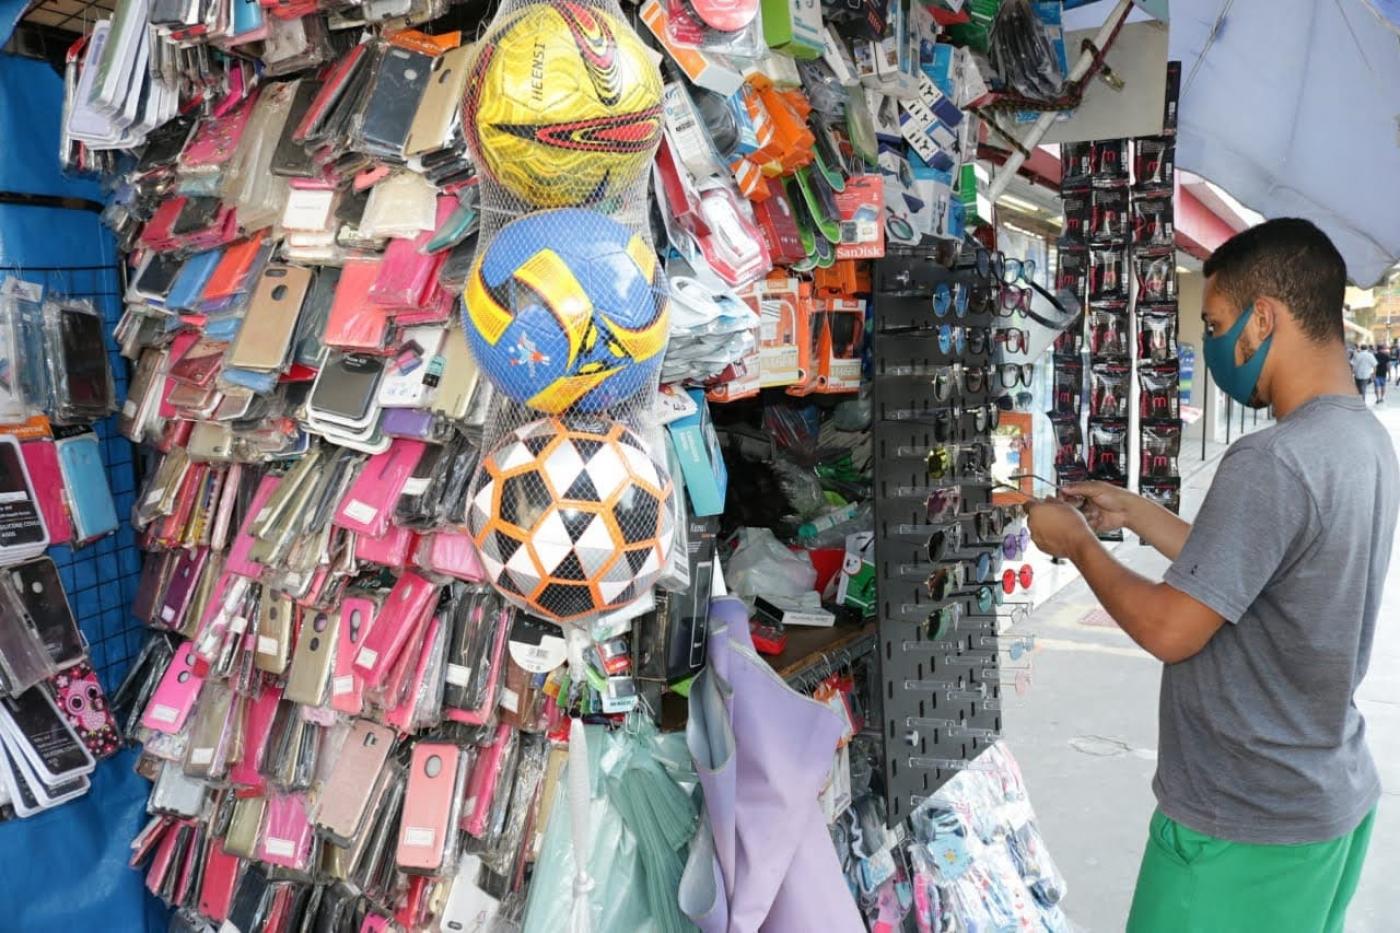 banca de comércio ambulante cheia de produtos pendurados, como óculos, capas de celular, brinquedos et